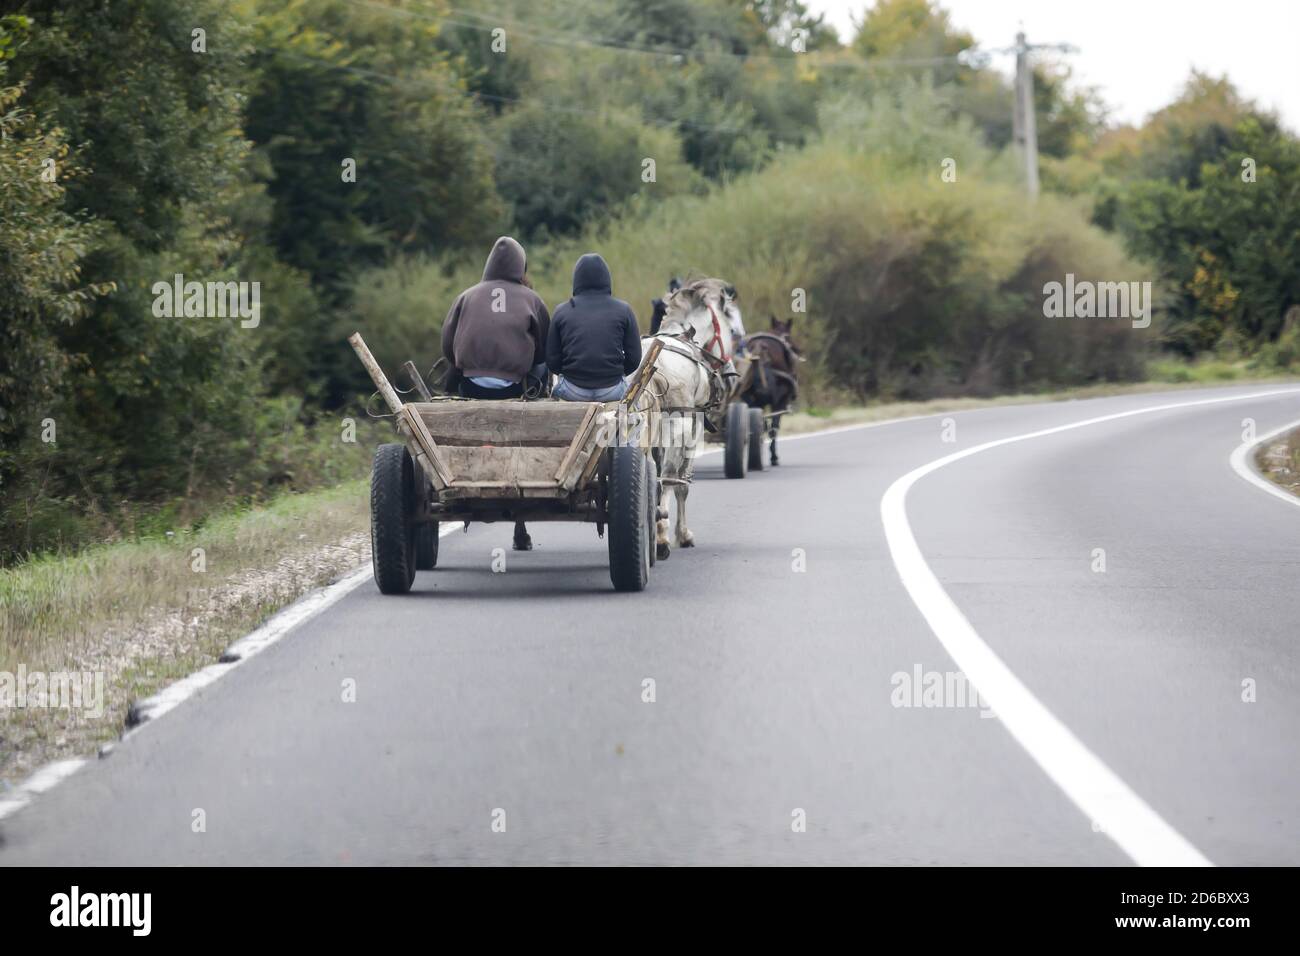 Roma fahren einen Pferdewagen auf einer öffentlichen Straße. Stockfoto